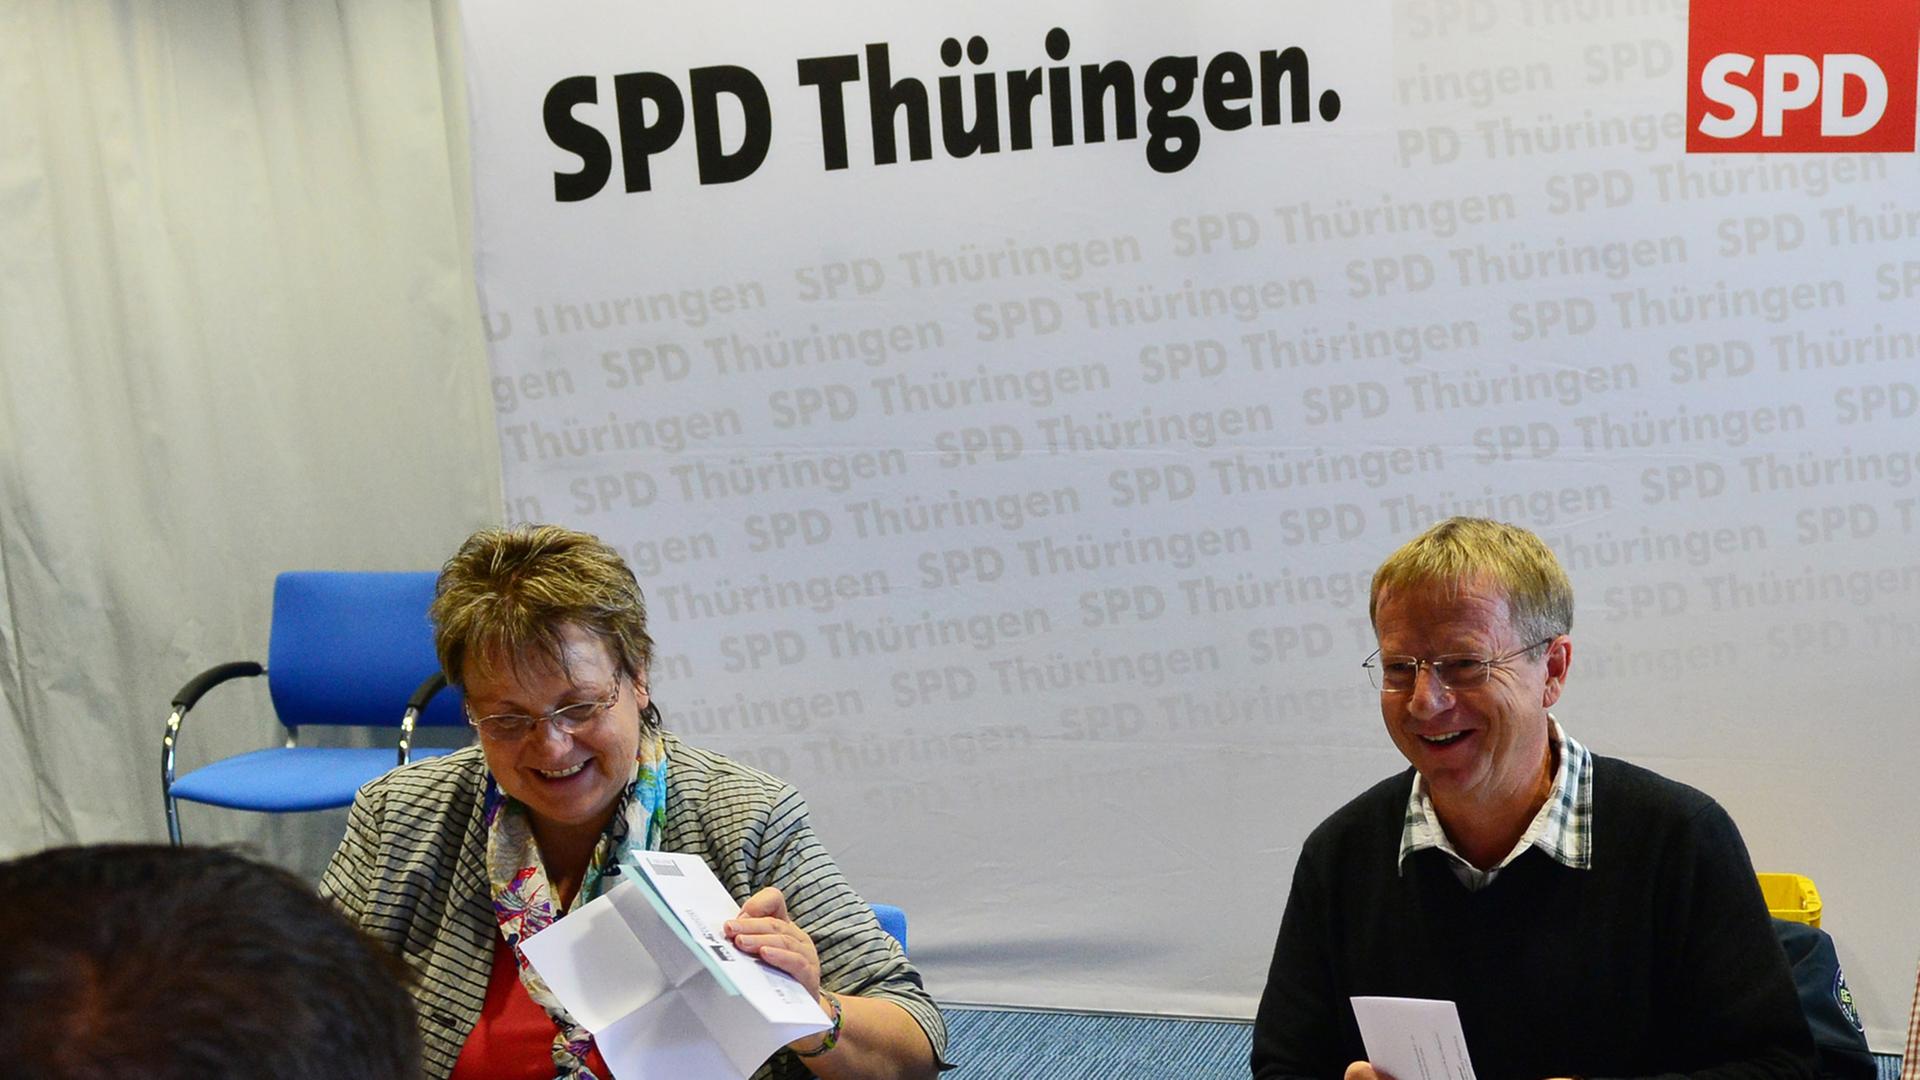 Die Stimmzettel der SPD-Mitgliederbefragung zur Bildung der ersten rot-rot-grünen Landesregierung in Deutschland werden am 04.11.2014 in Erfurt (Thüringen) ausgezählt.